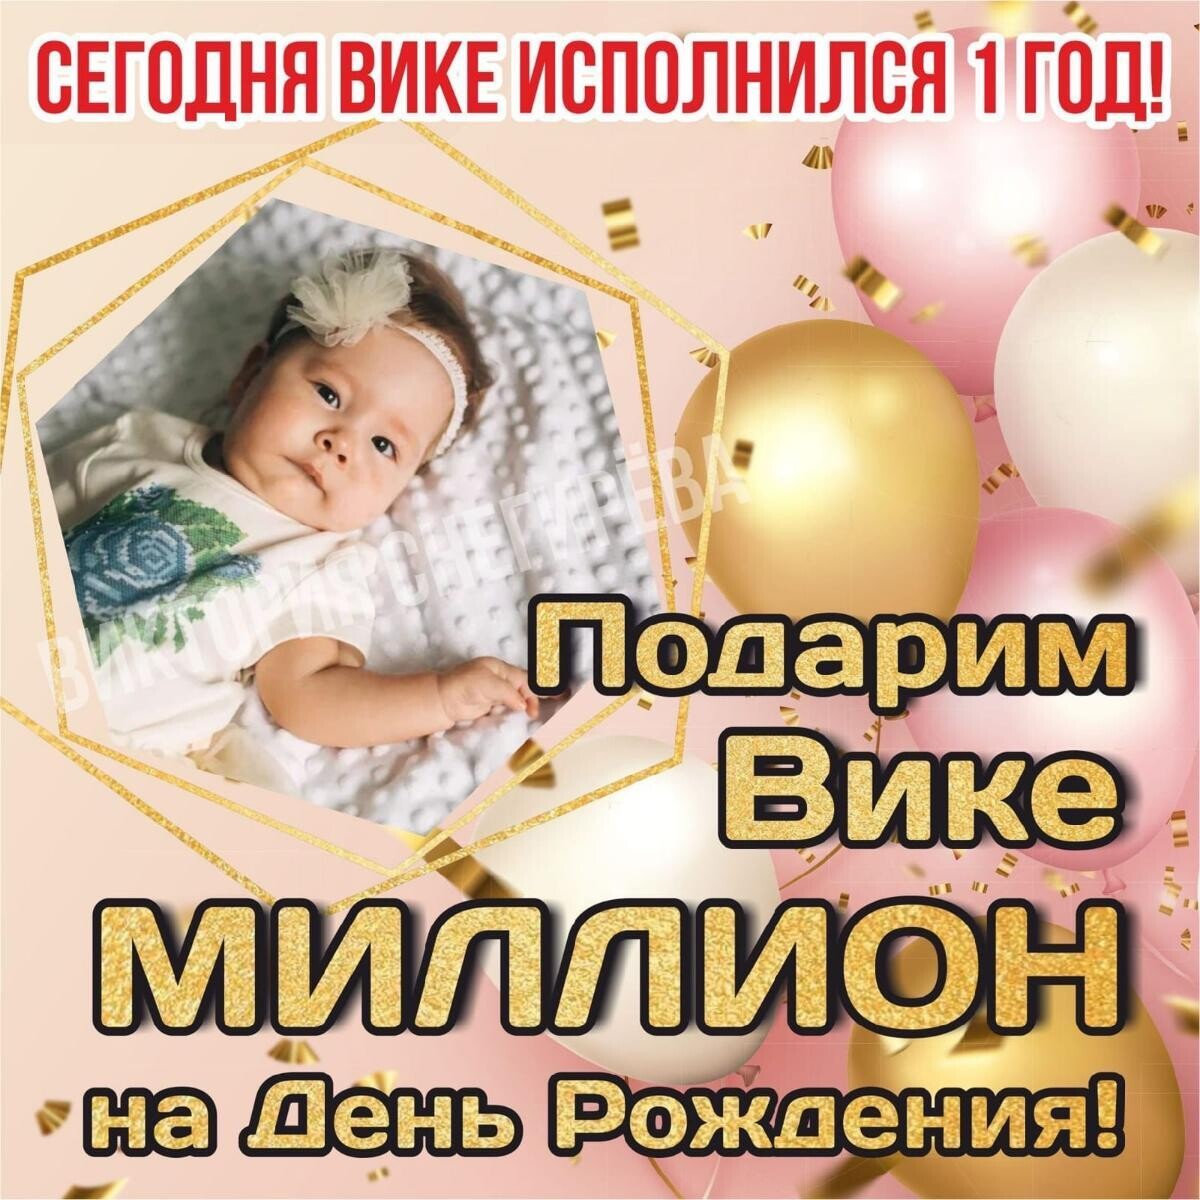 Вика Снегирёва надеется, что её первый день рождения не станет последним